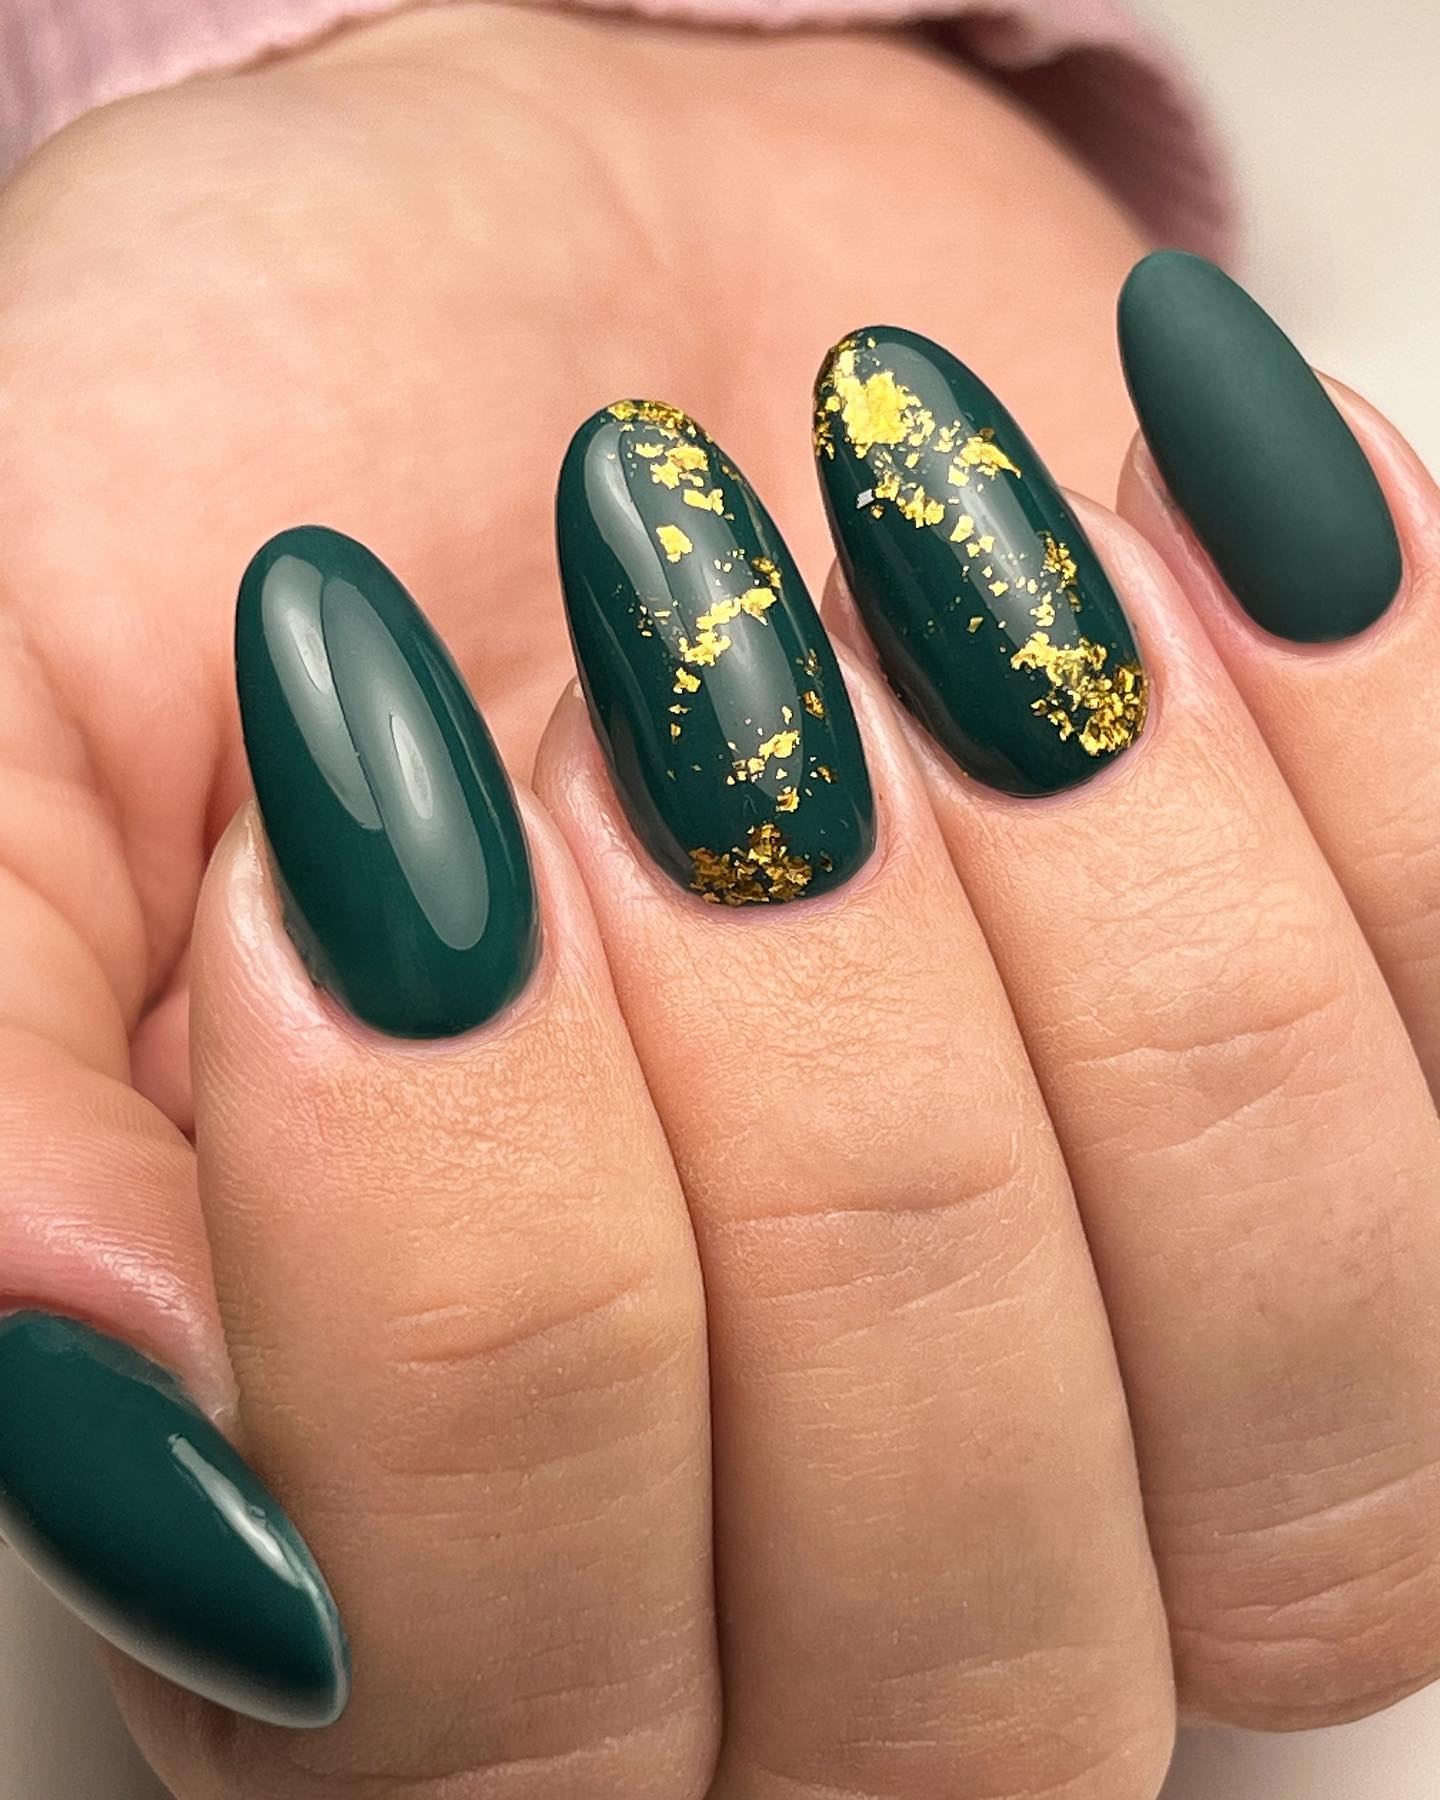 Zbliżenie leśnych zielonych paznokci z ozdobami ze złotej folii